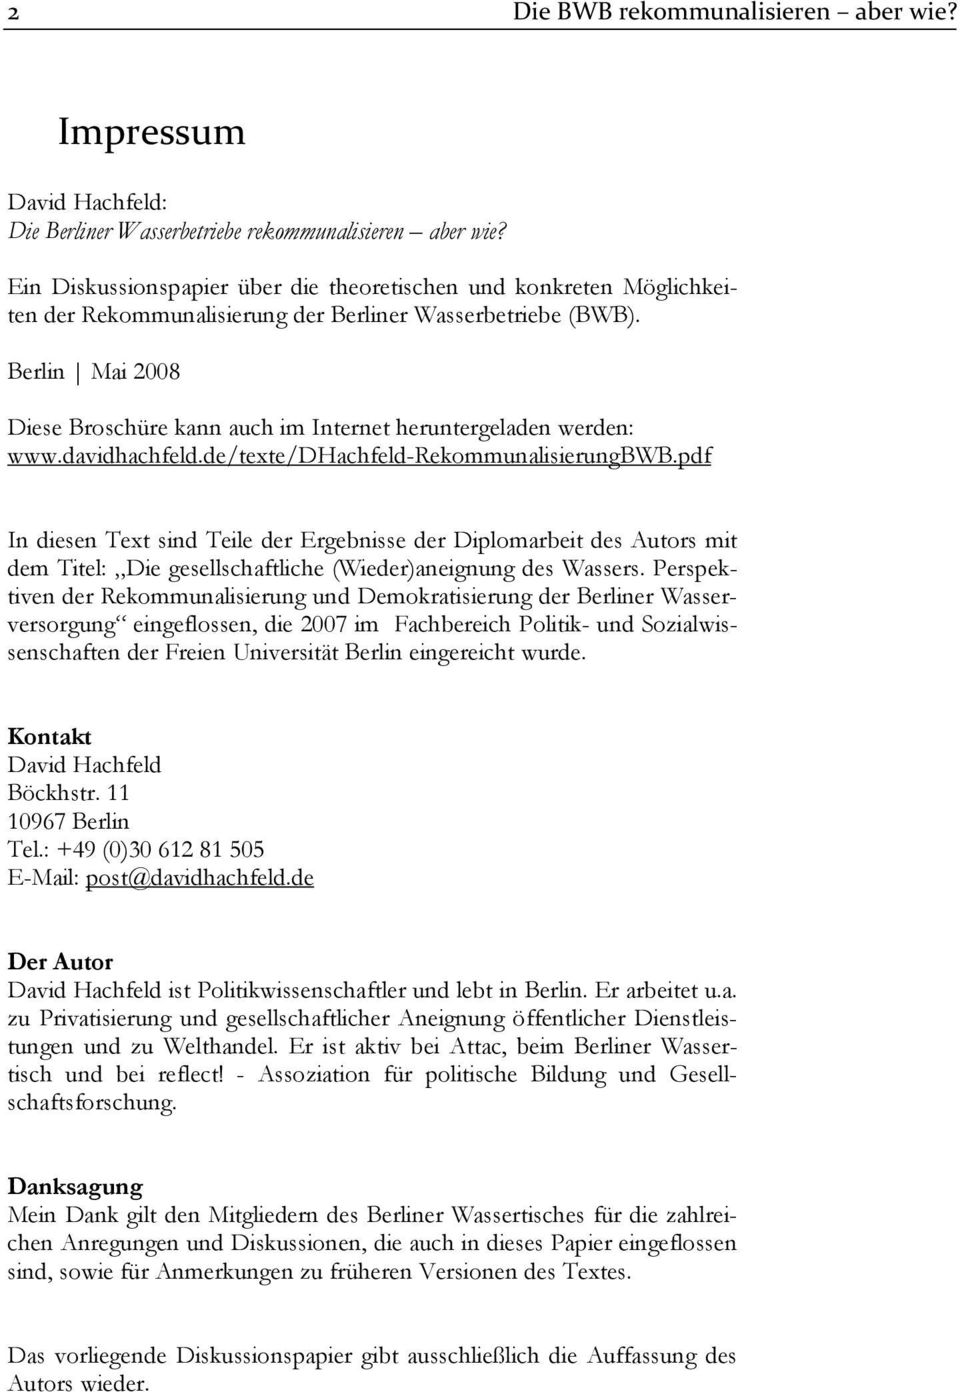 Berlin Mai 2008 Diese Broschüre kann auch im Internet heruntergeladen werden: www.davidhachfeld.de/texte/dhachfeld-rekommunalisierungbwb.